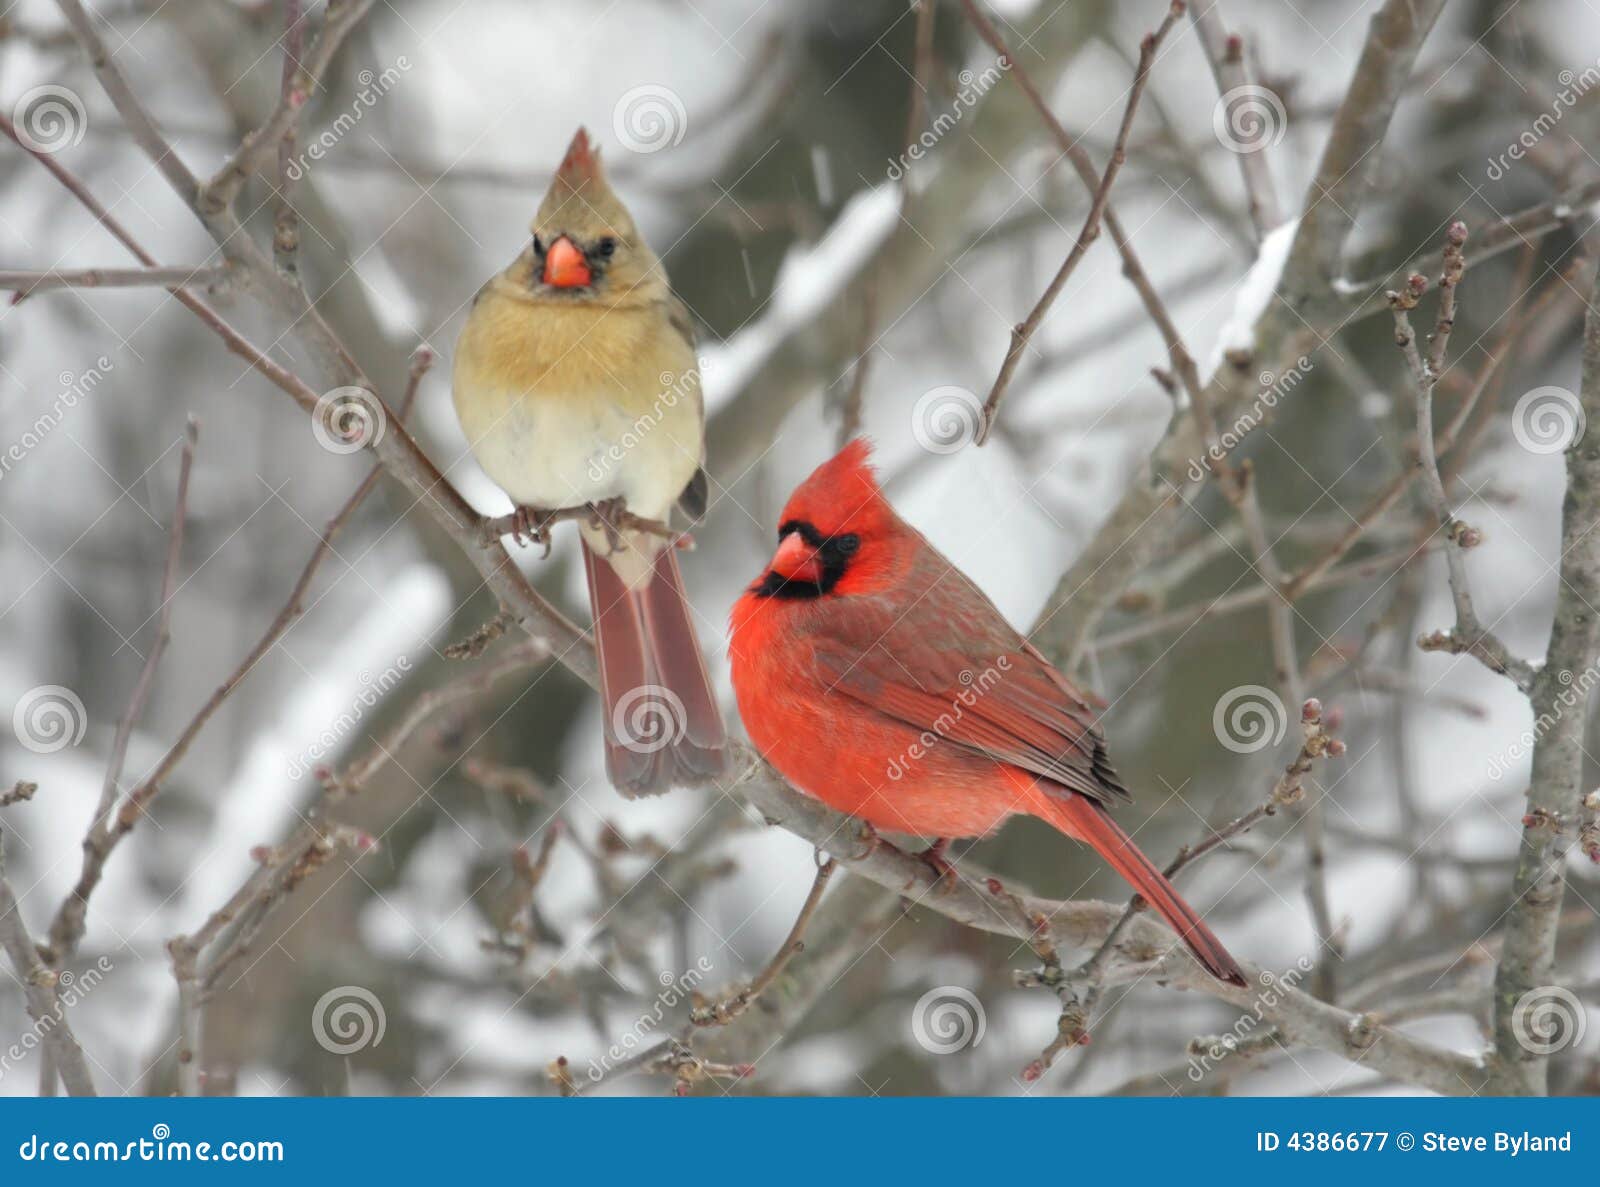 pair of northern cardinals